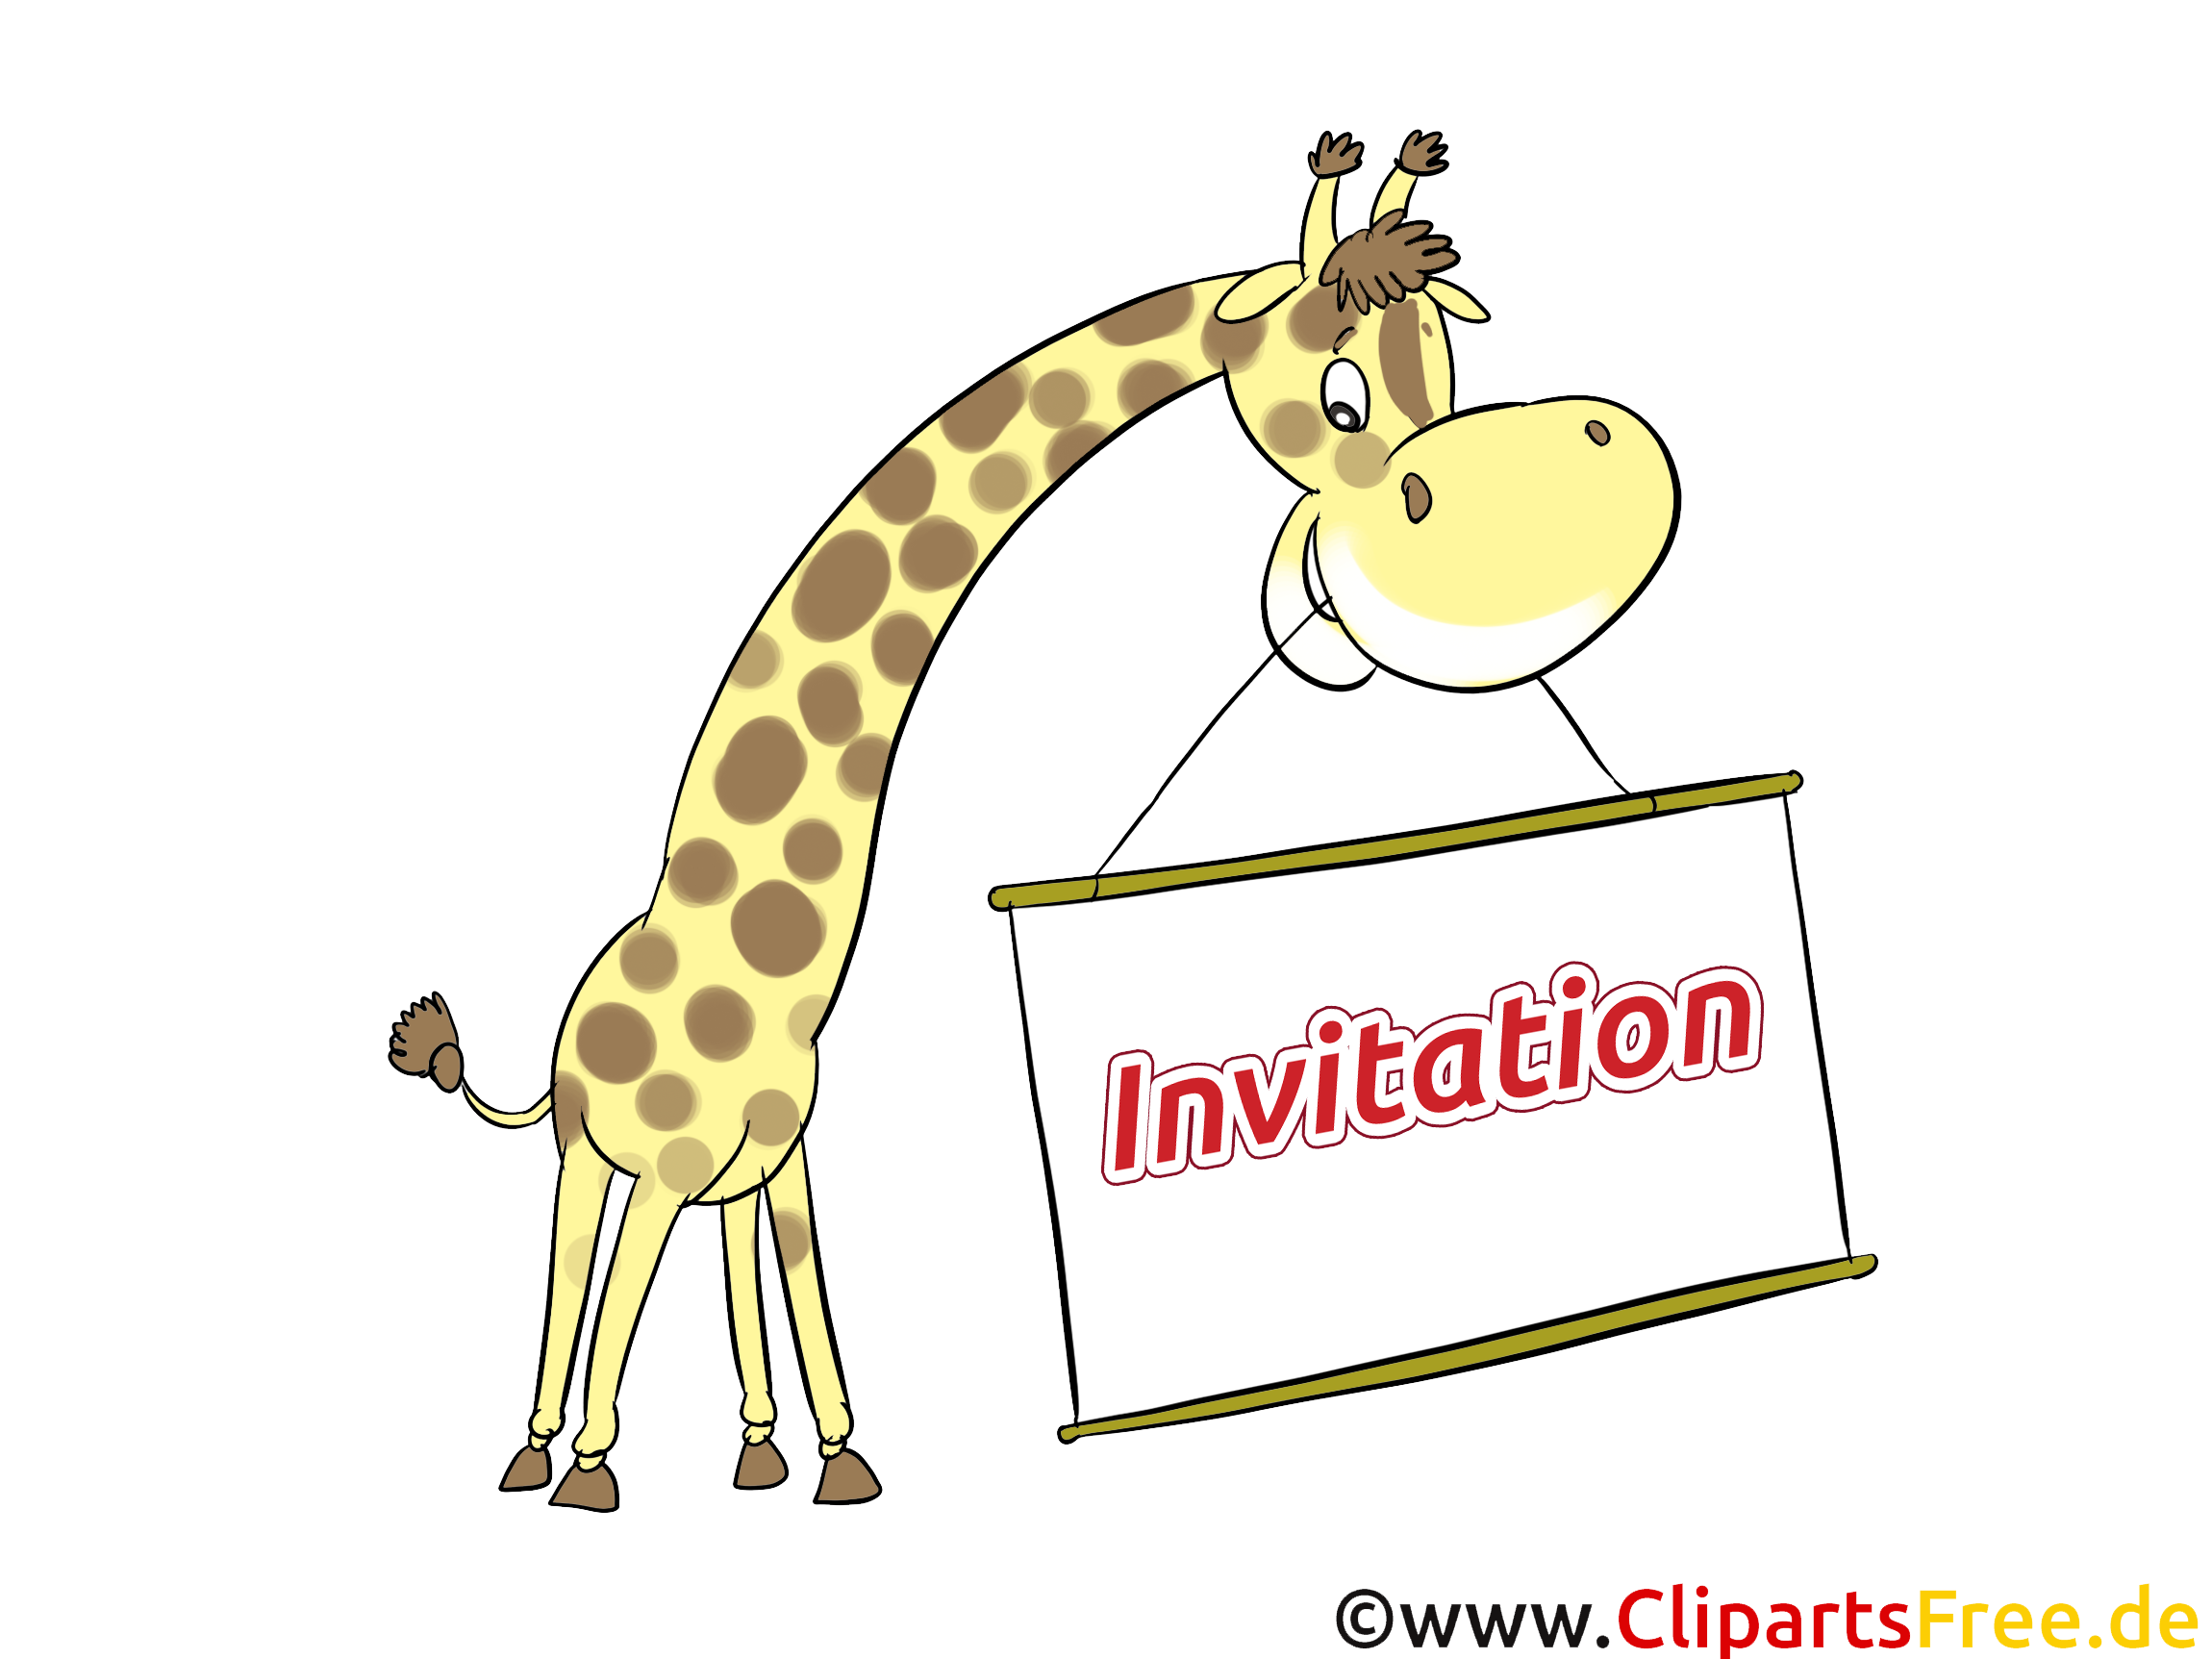 Girafe images - Invitation clip art gratuit